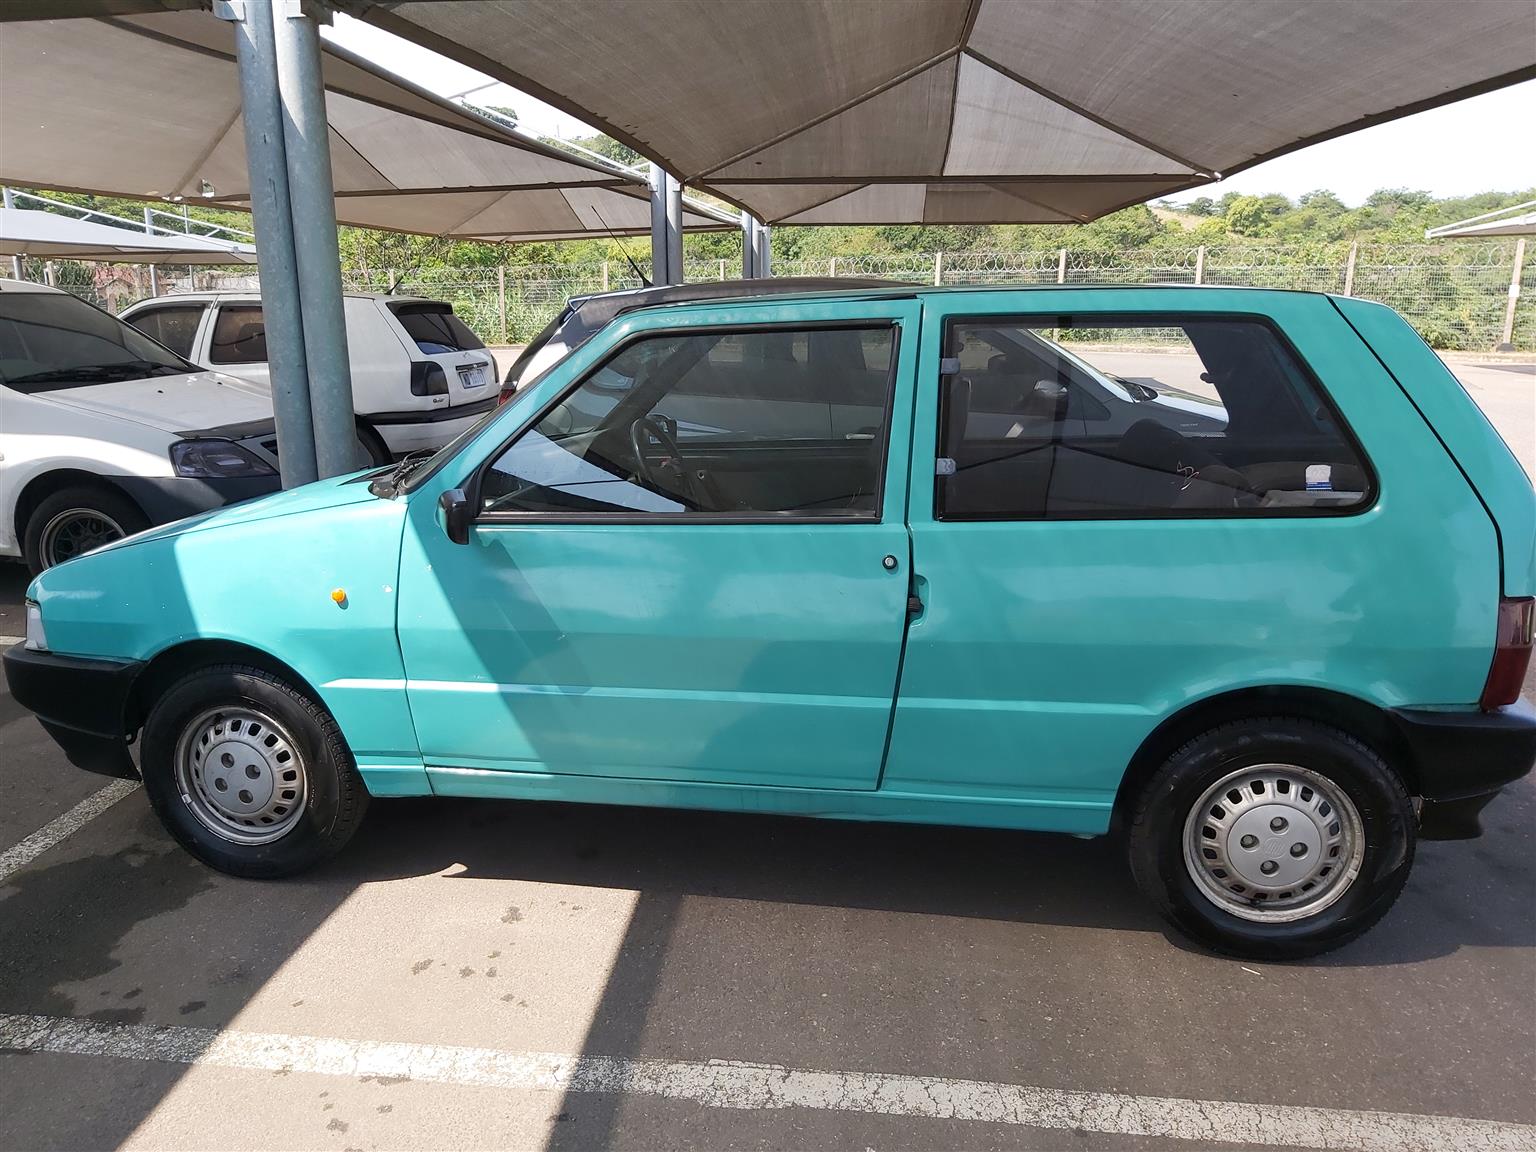 1997 Fiat Uno